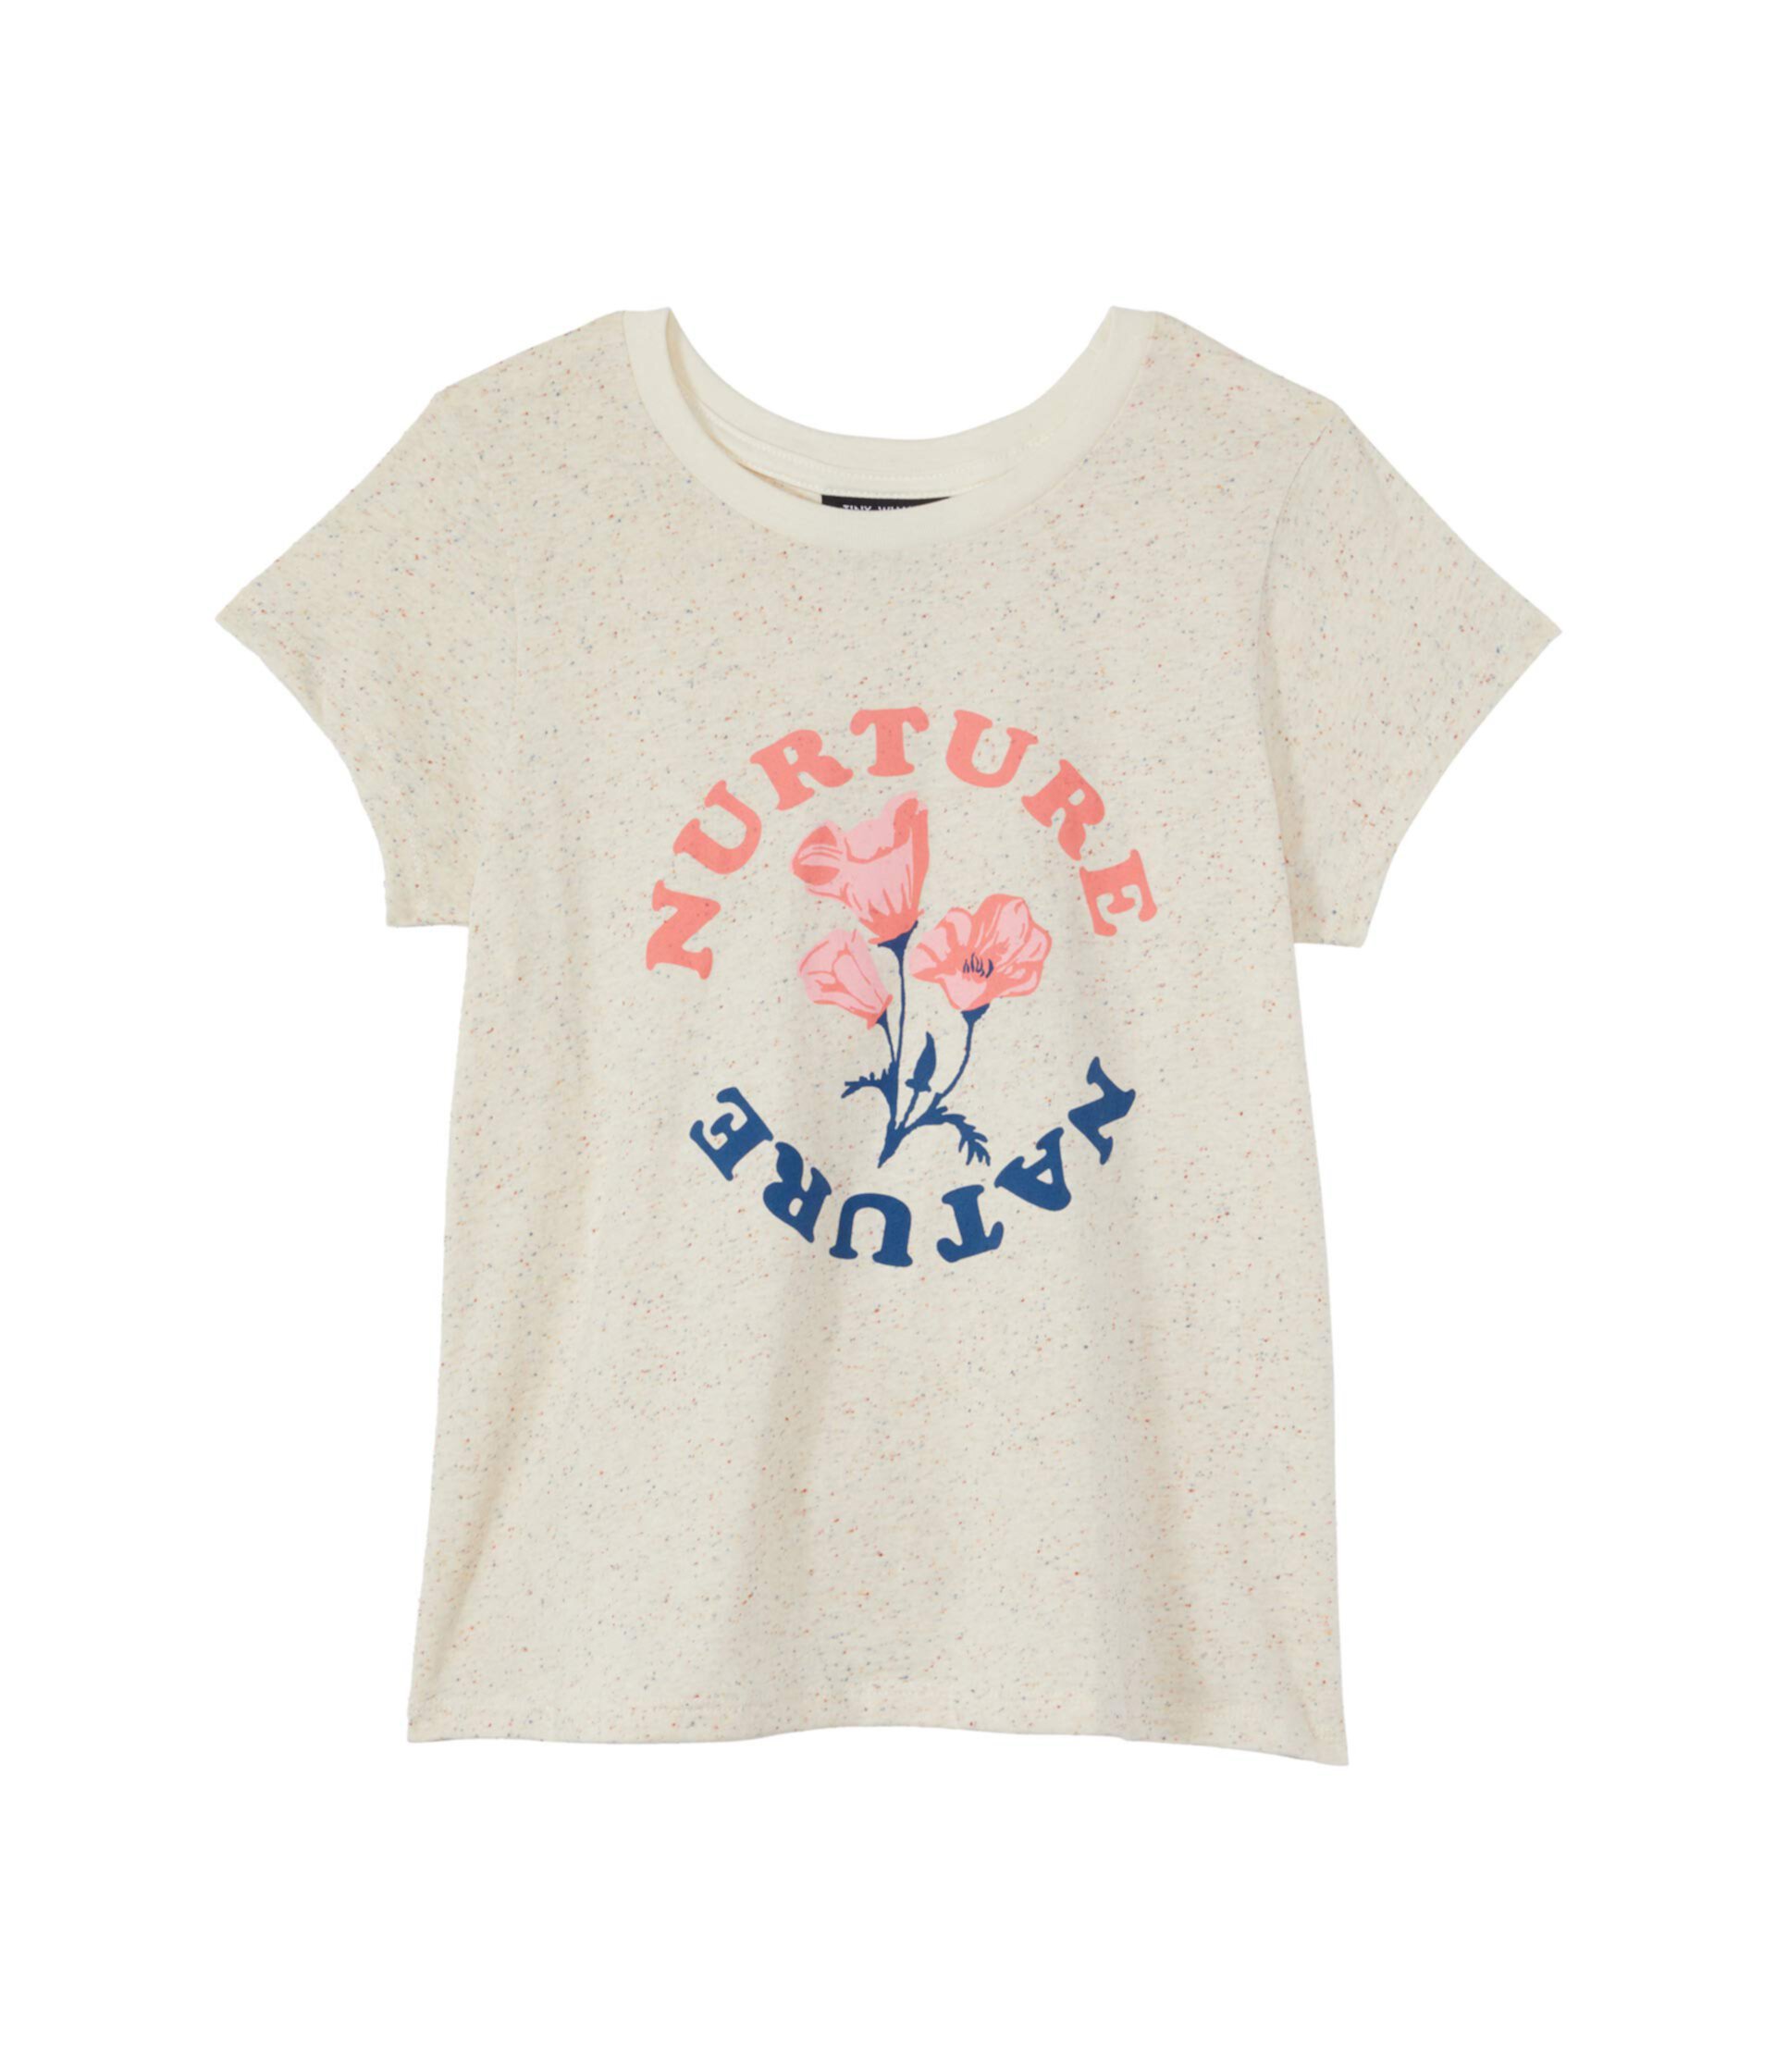 Nuture Nature Text с футболкой с цветком (малыши / маленькие дети / старшие дети) Tiny Whales